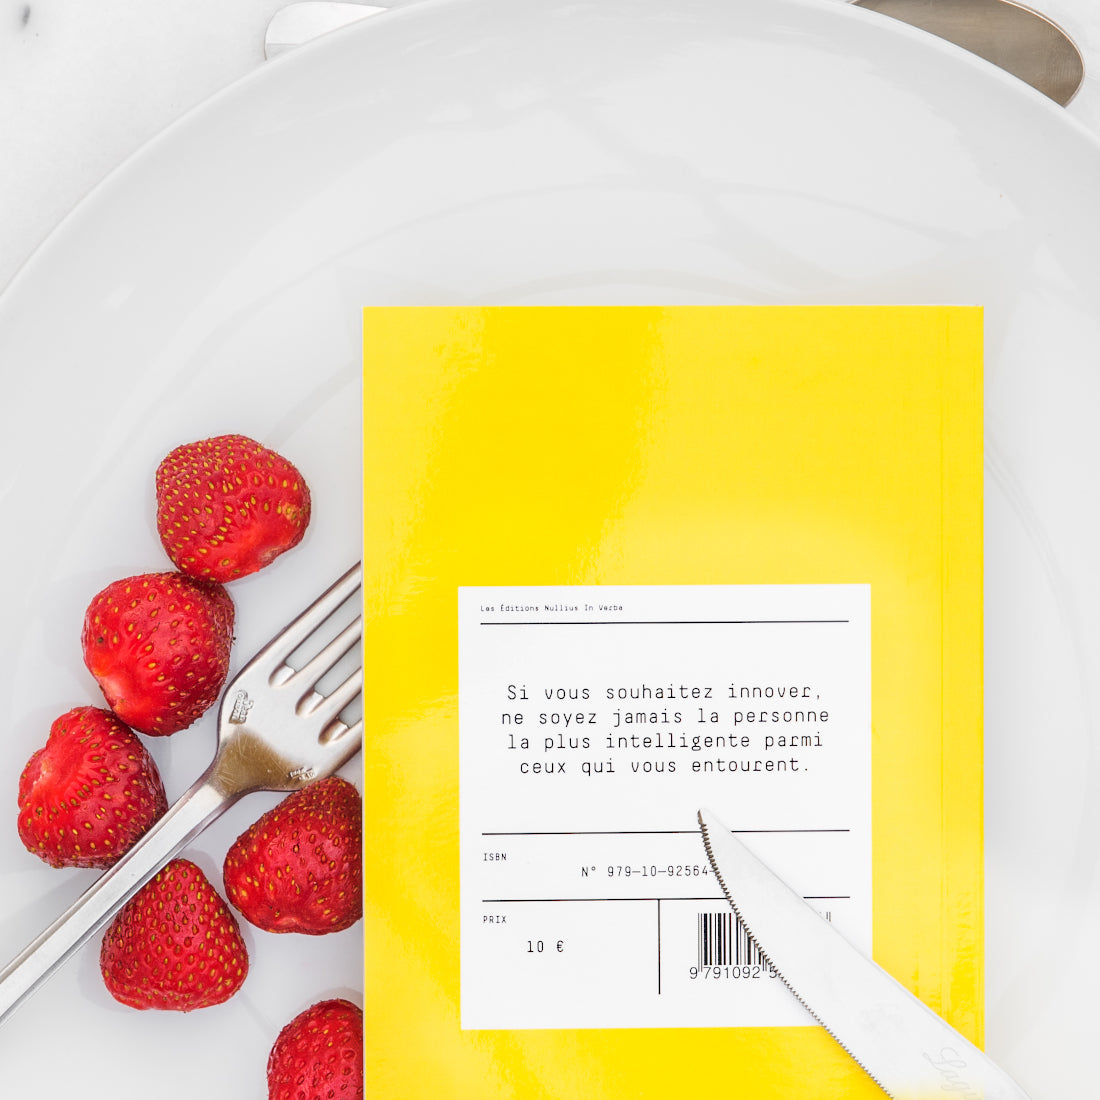 Le livre est retourné dans l'assiette avec des fraises. On peut lire la quatrième de couverture.